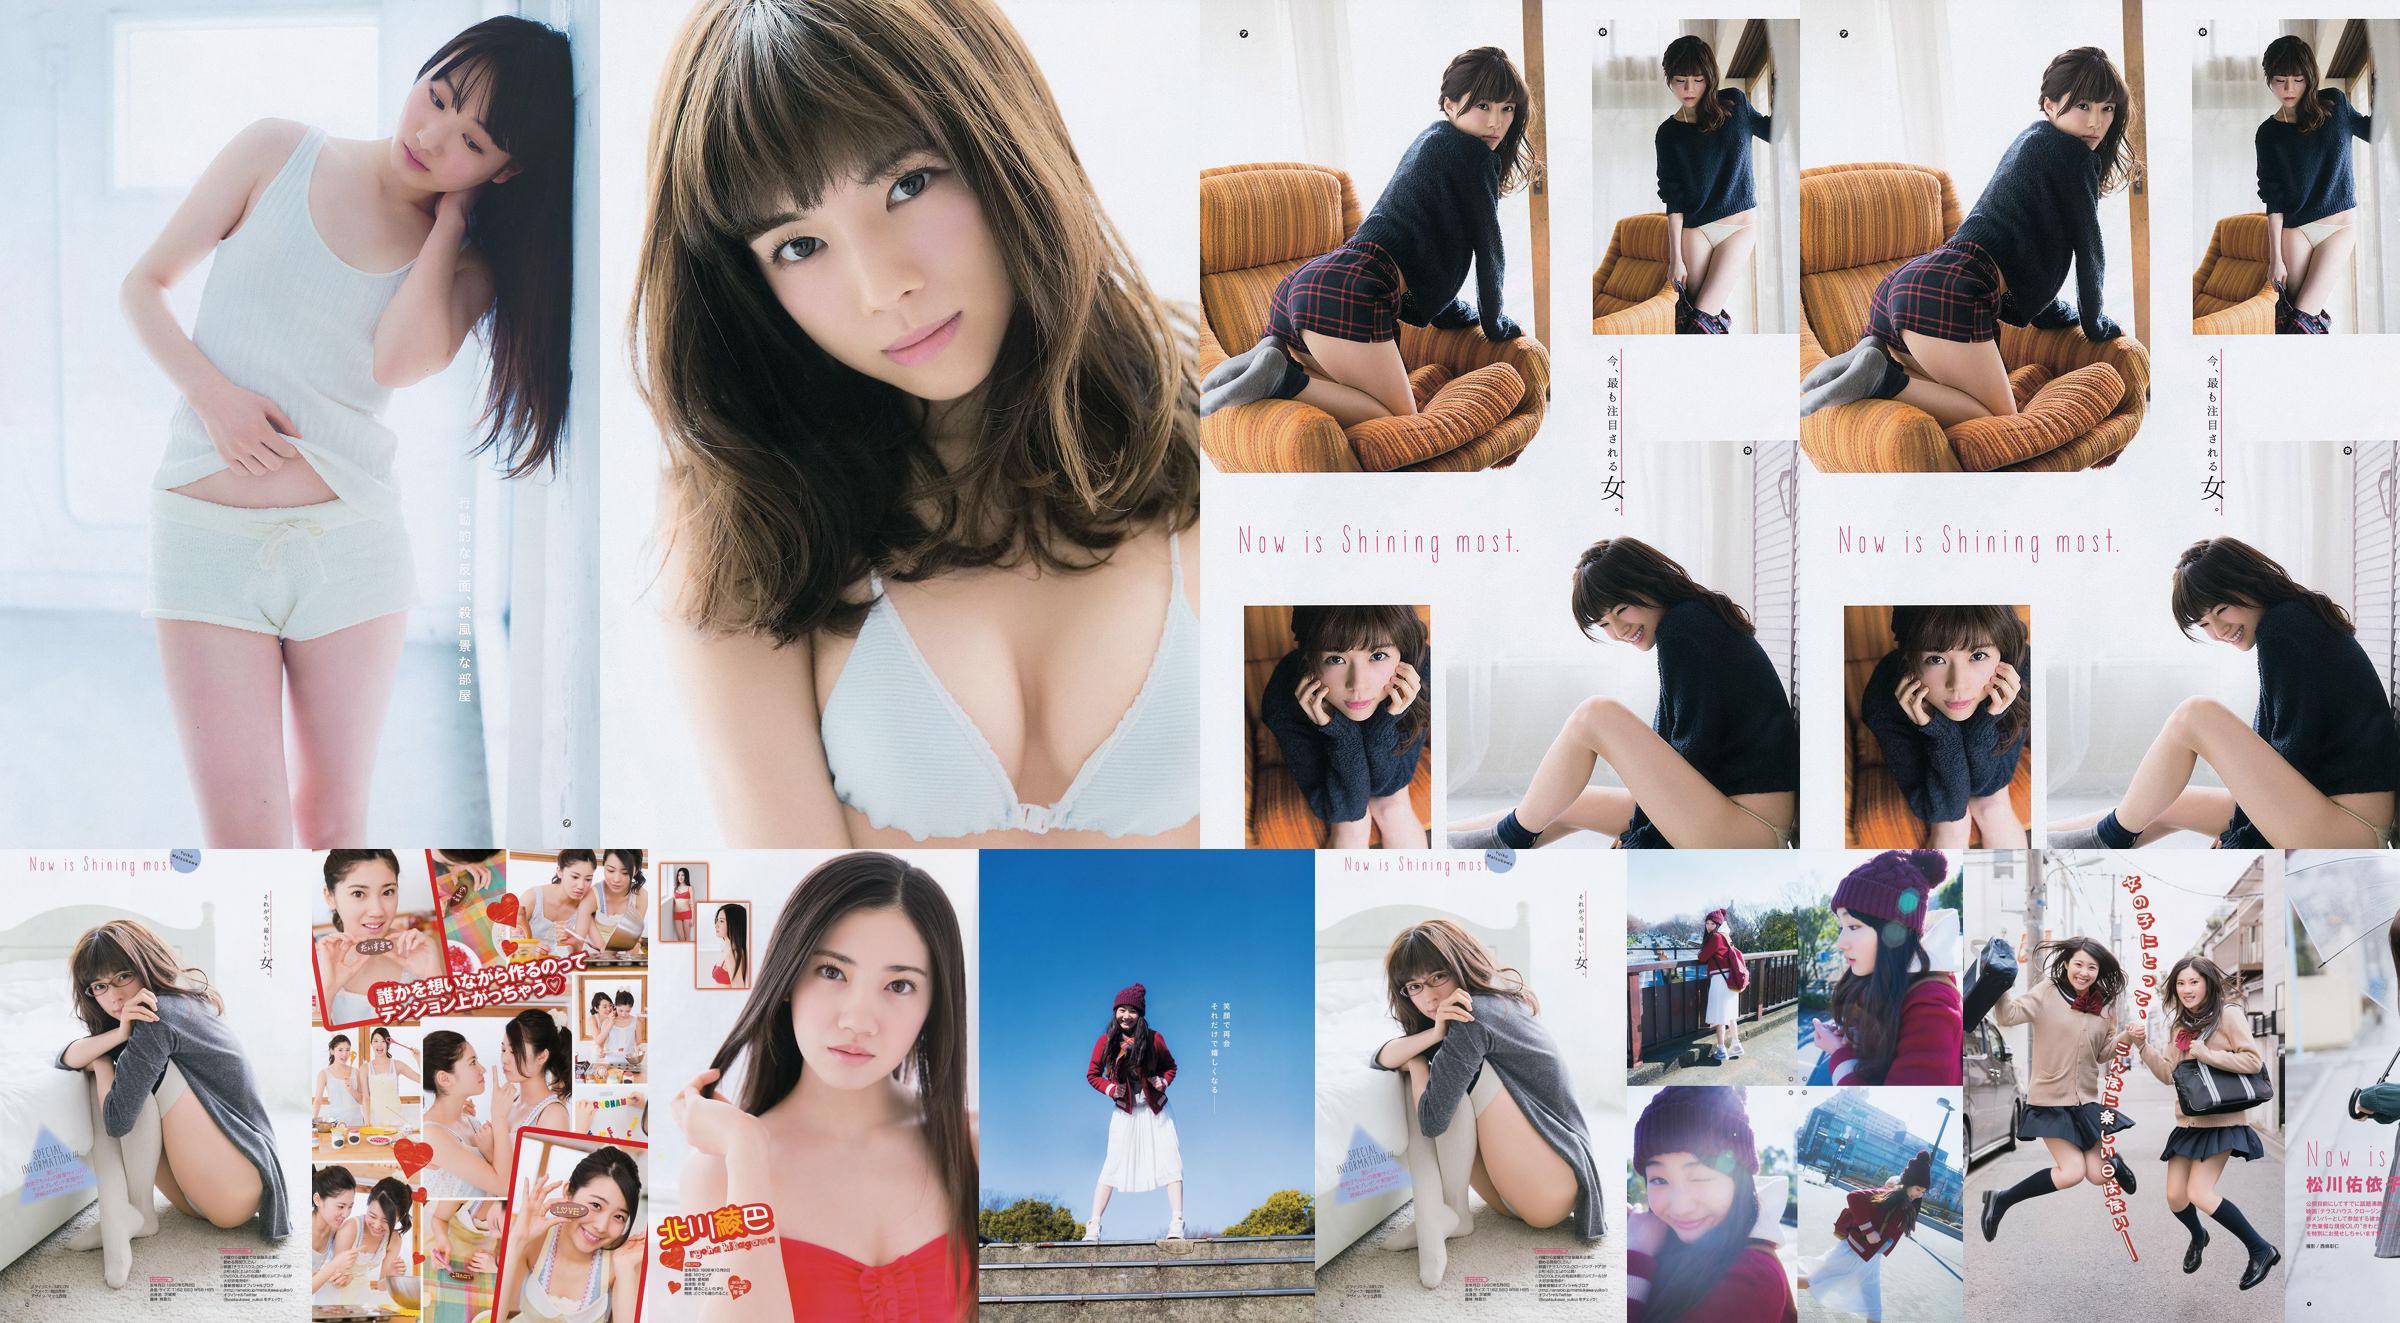 [Young Gangan] Ryoha Kitagawa Ami Miyamae Yuiko Matsukawa Narumi Akizuki 2015 Fotografia No.04 No.a855e1 Página 12